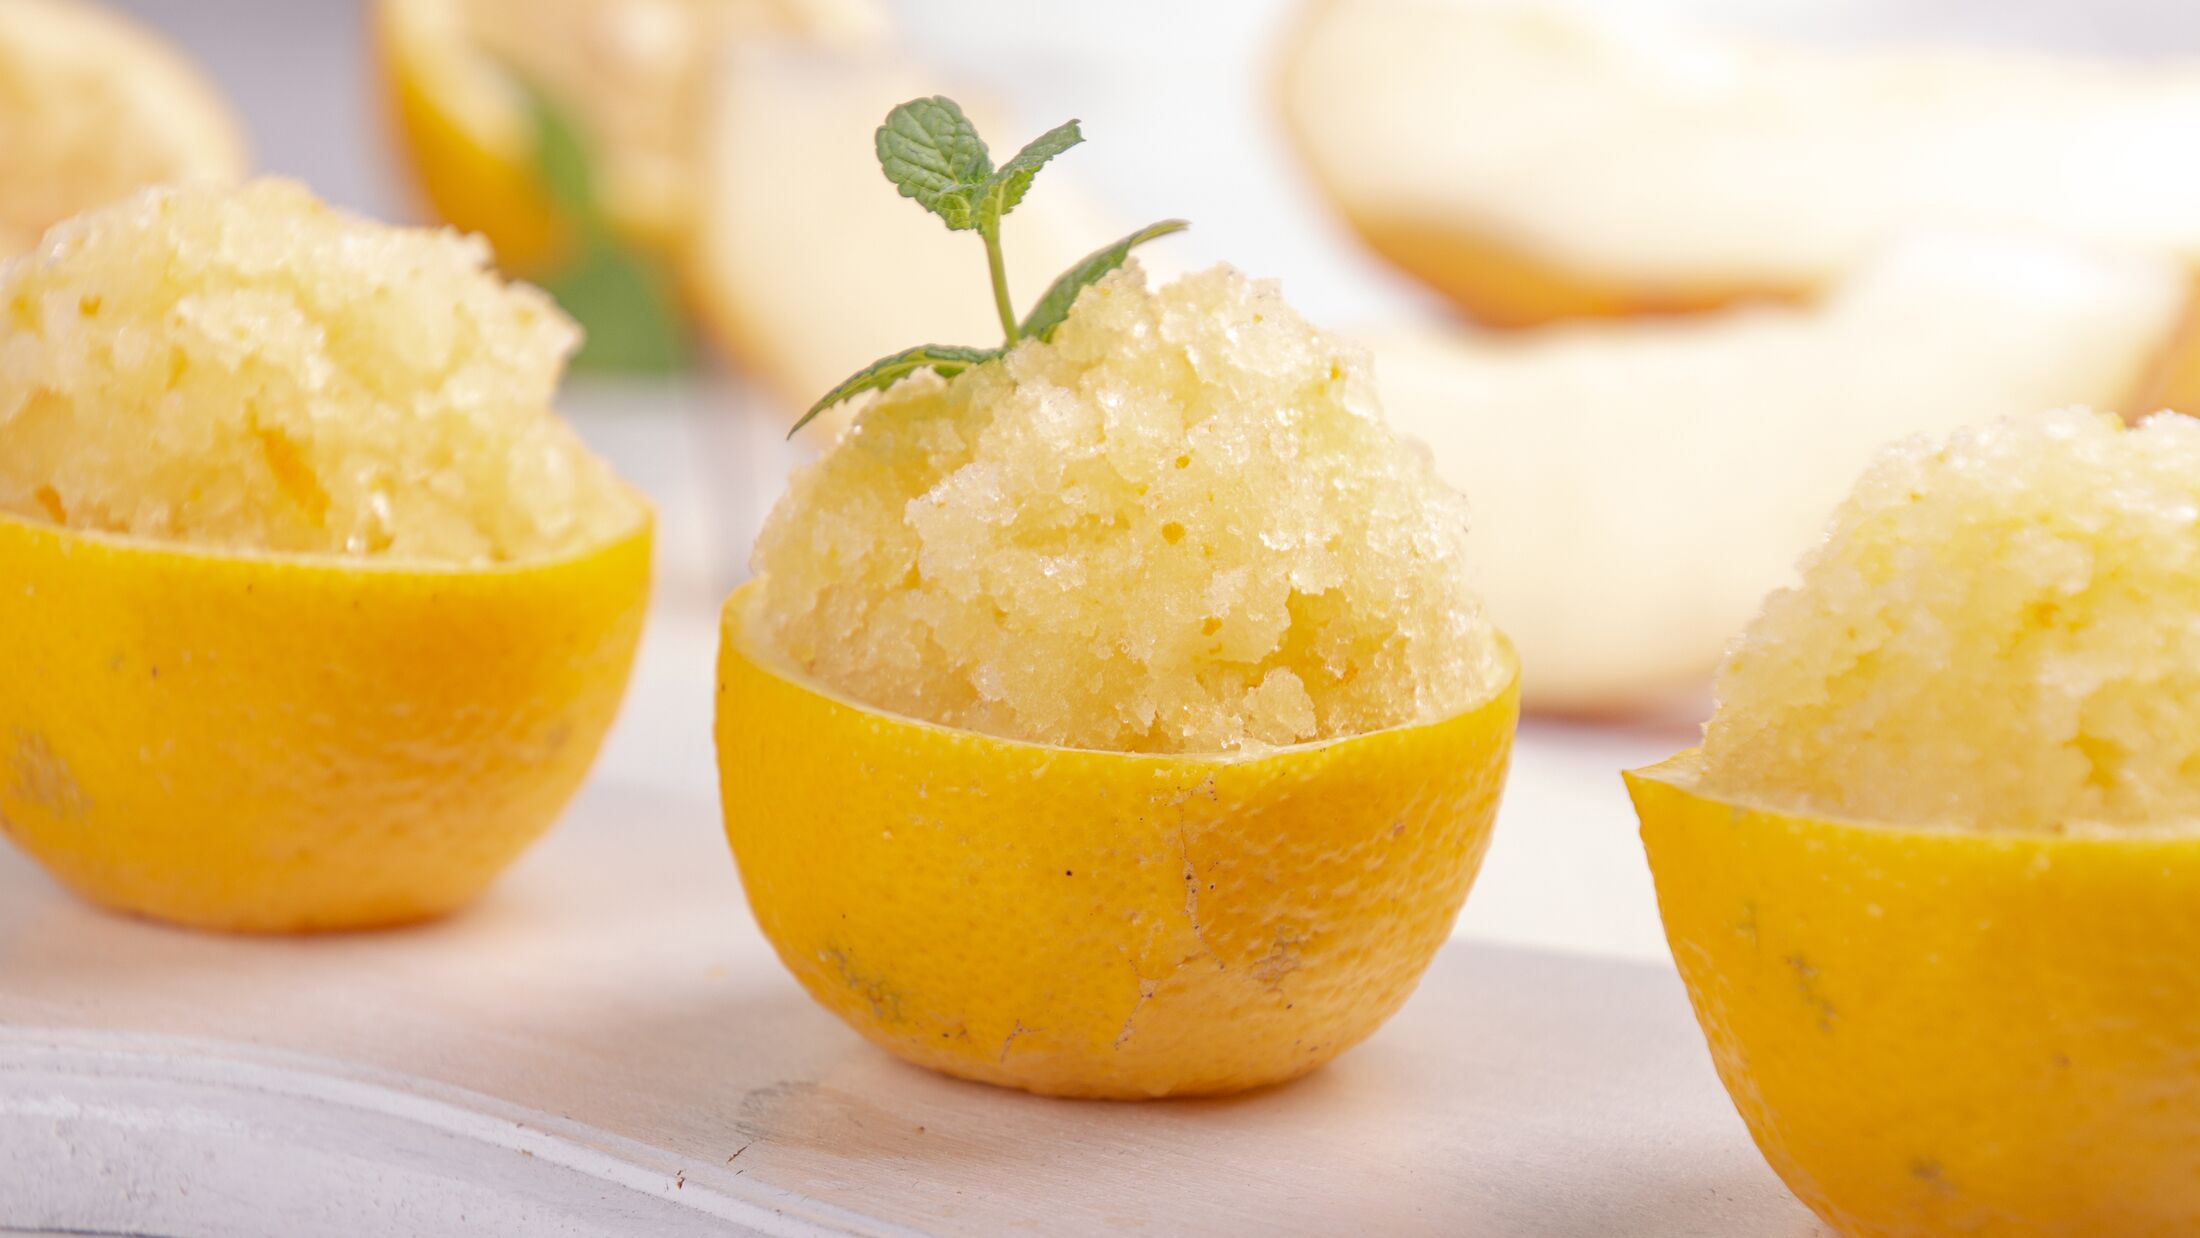 Melon and lemon fruit sorbet. Summer refreshing dessert in half of lemon fruit peel over on white background.